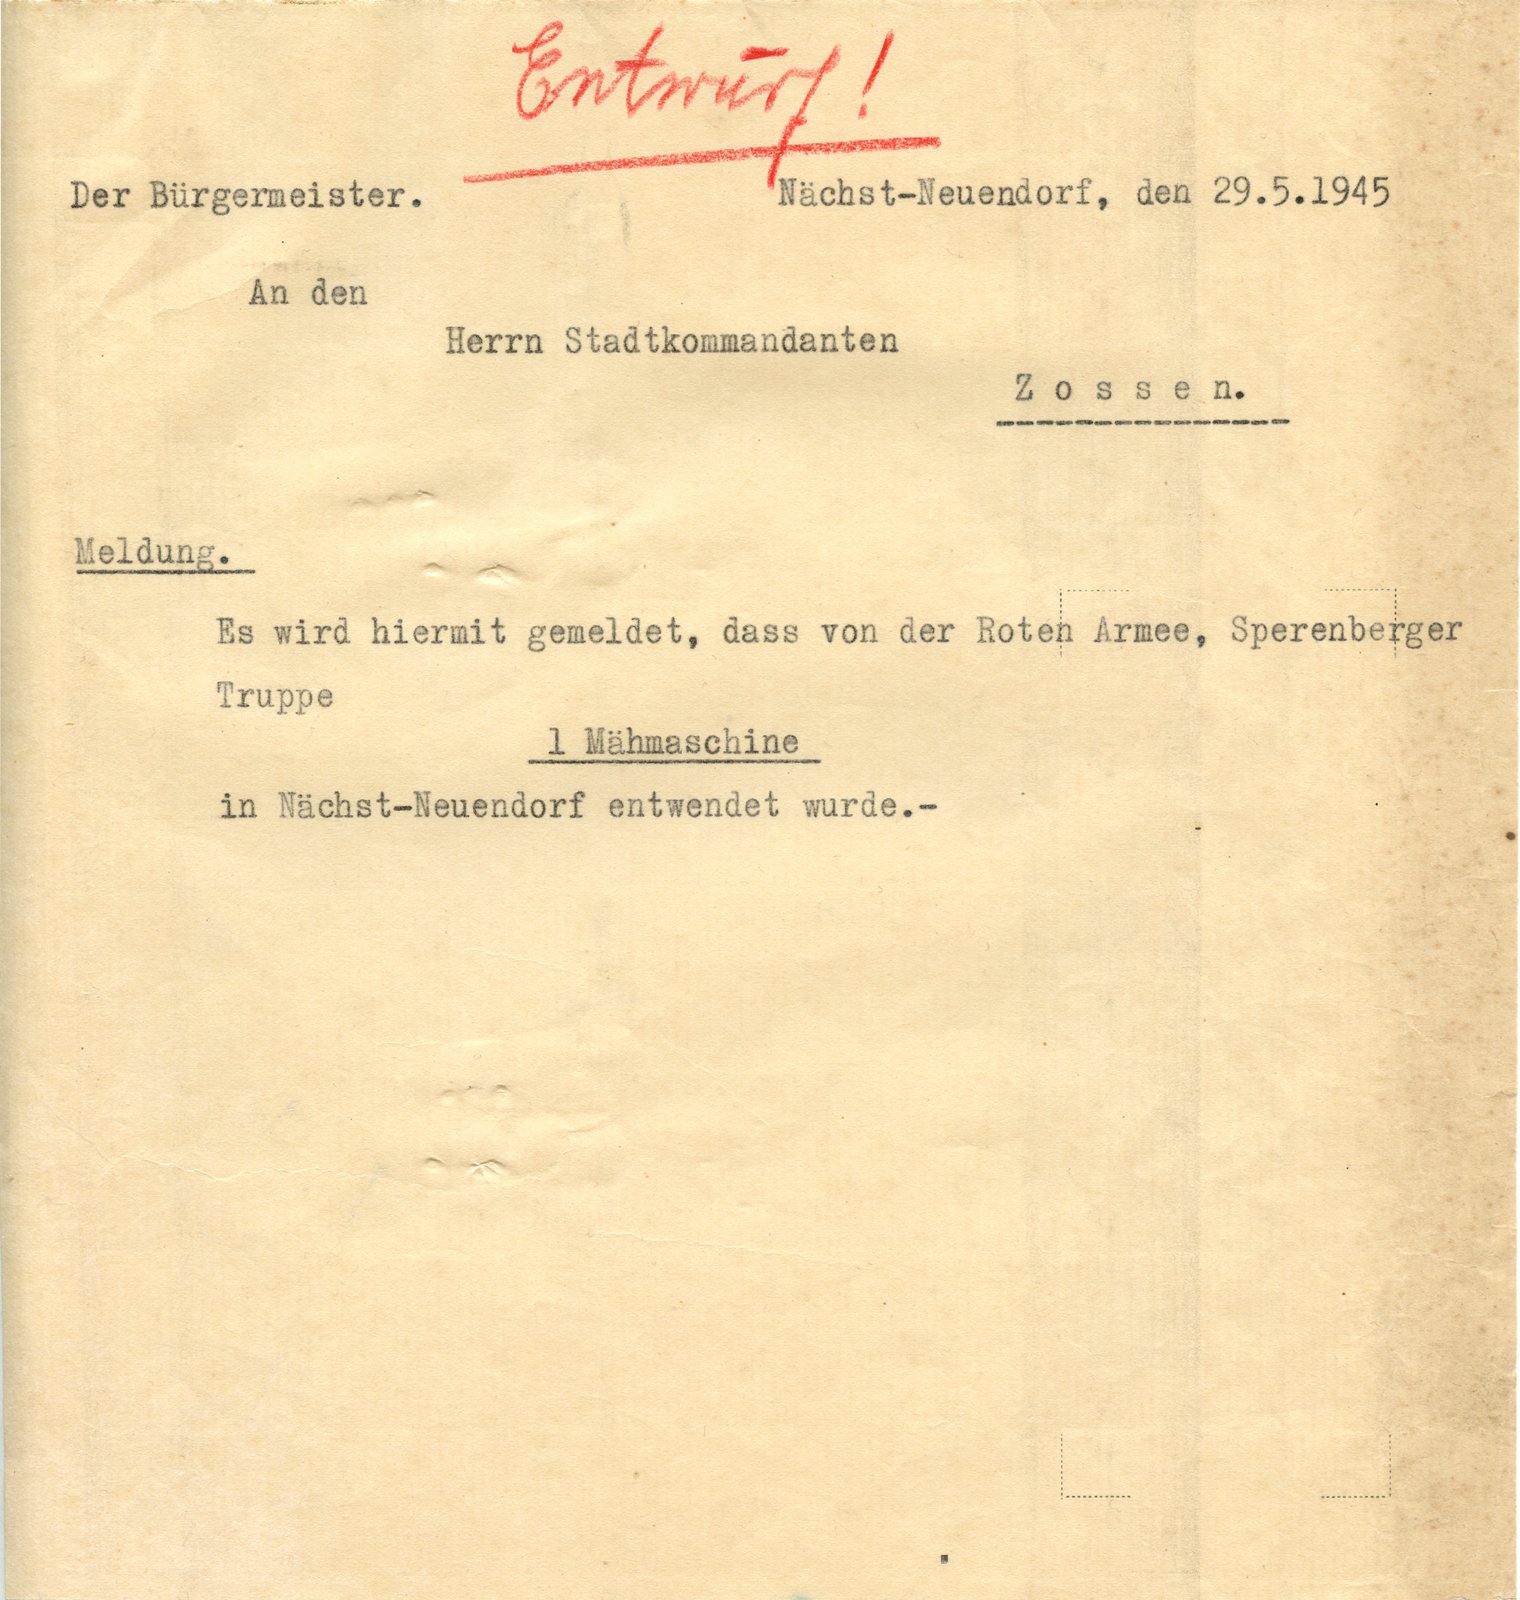 BM-Stadtkommandant, 29.05.1945 (Heimatverein "Alter Krug" Zossen e.V. CC BY-NC-SA)